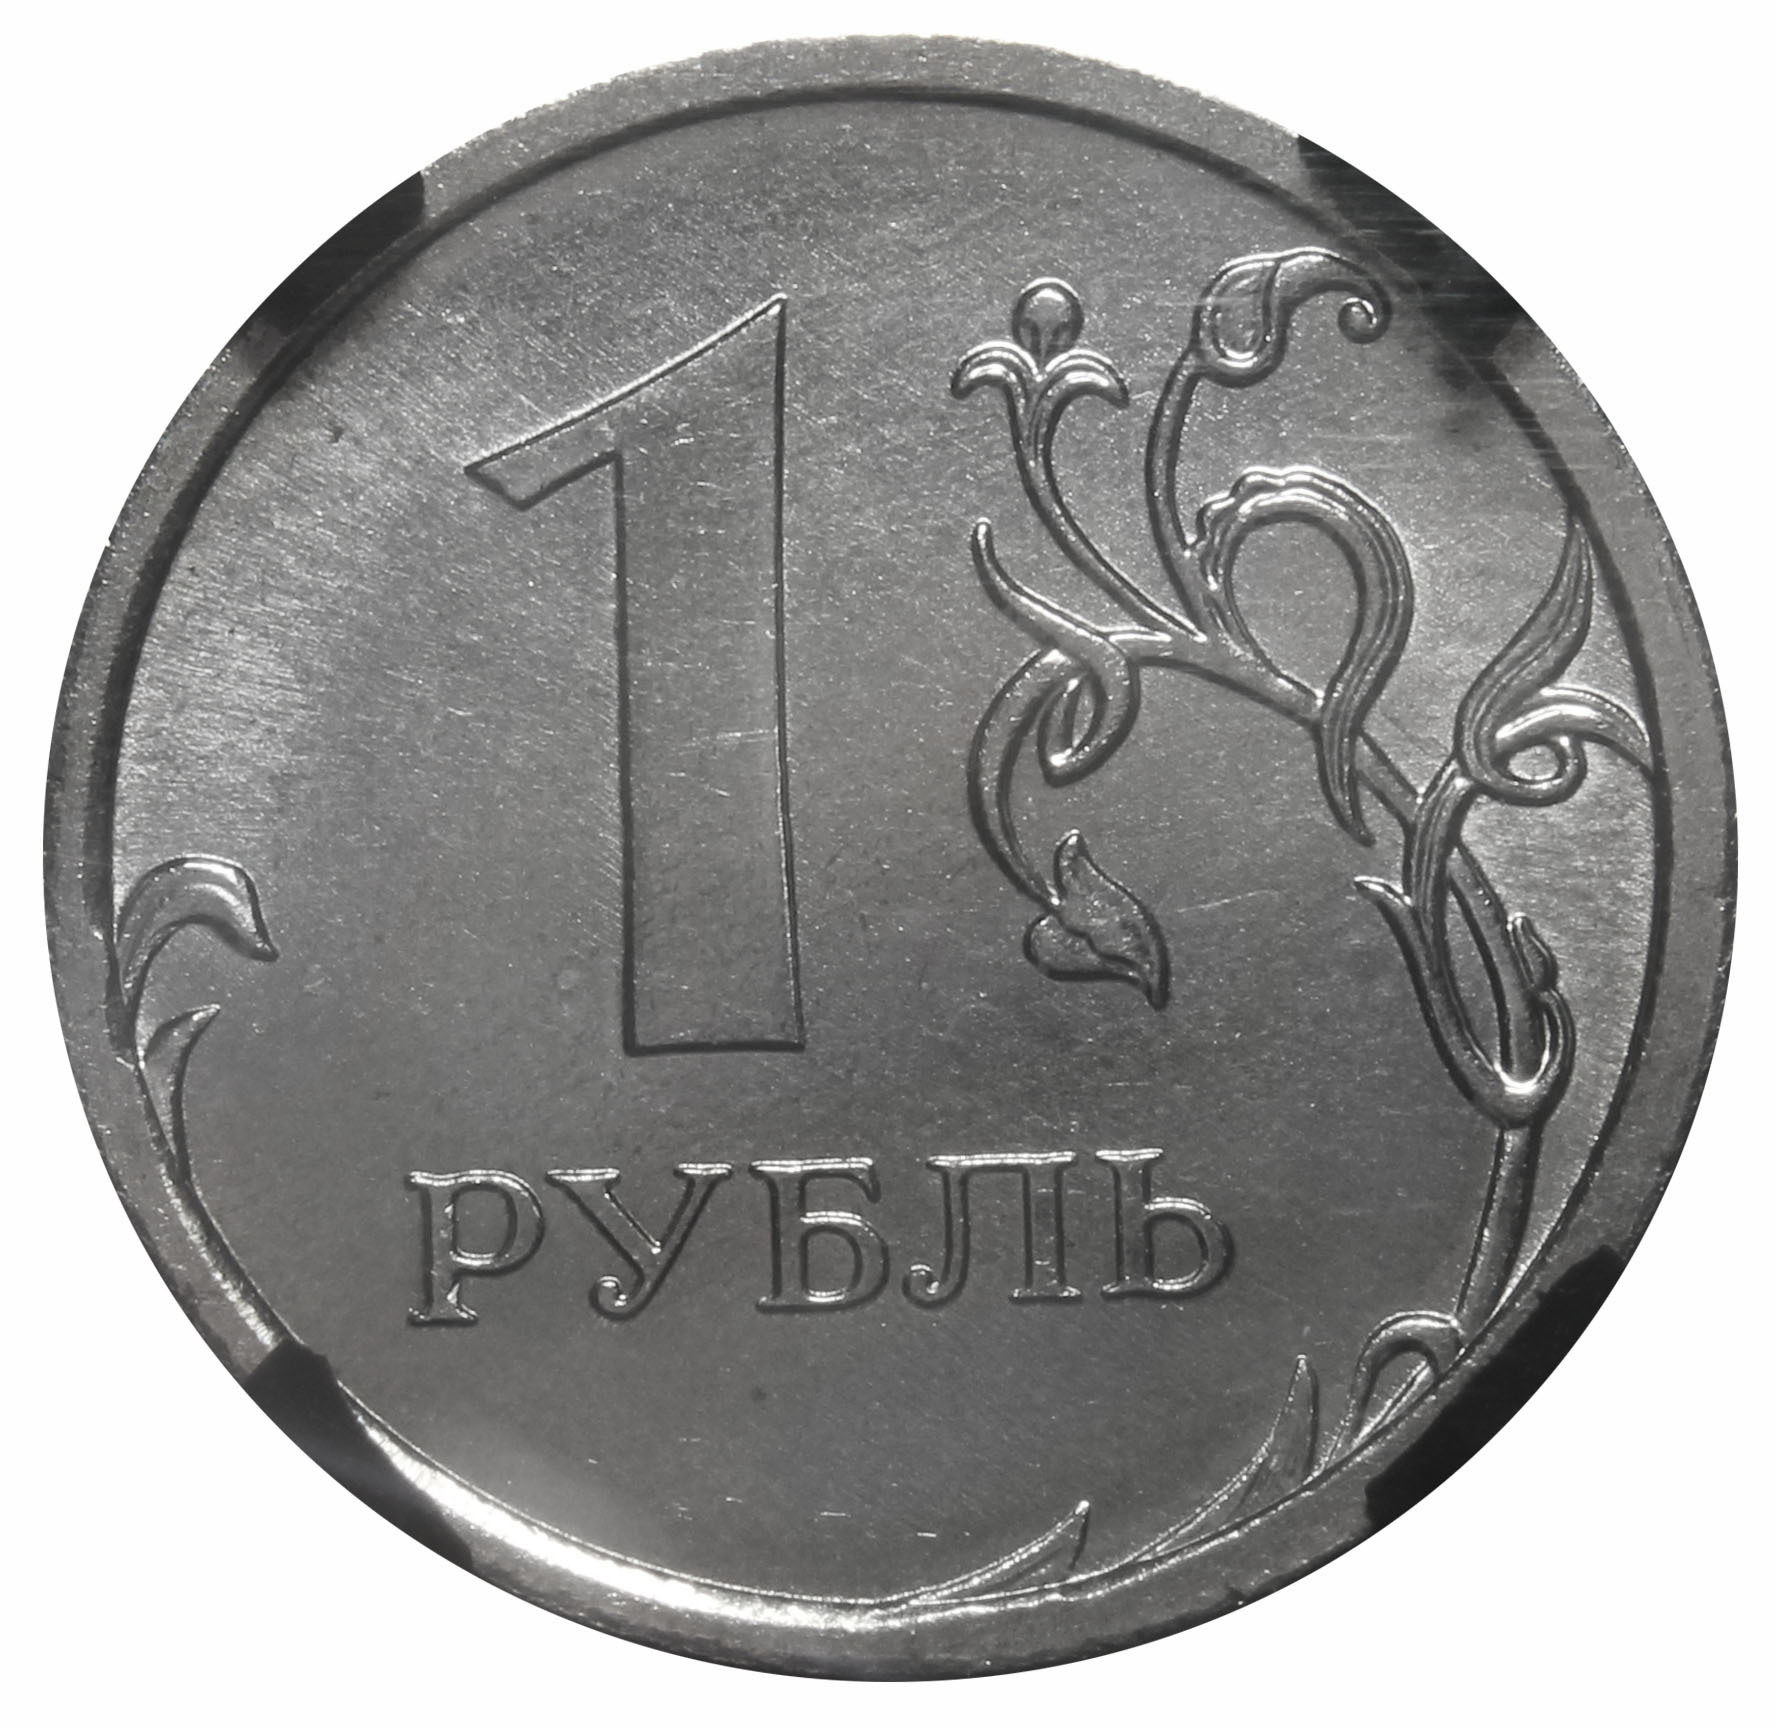 1 Рубль. Монеты рубли. Монета 1 руб. Изображение монеты 1 рубль. Рубль ис